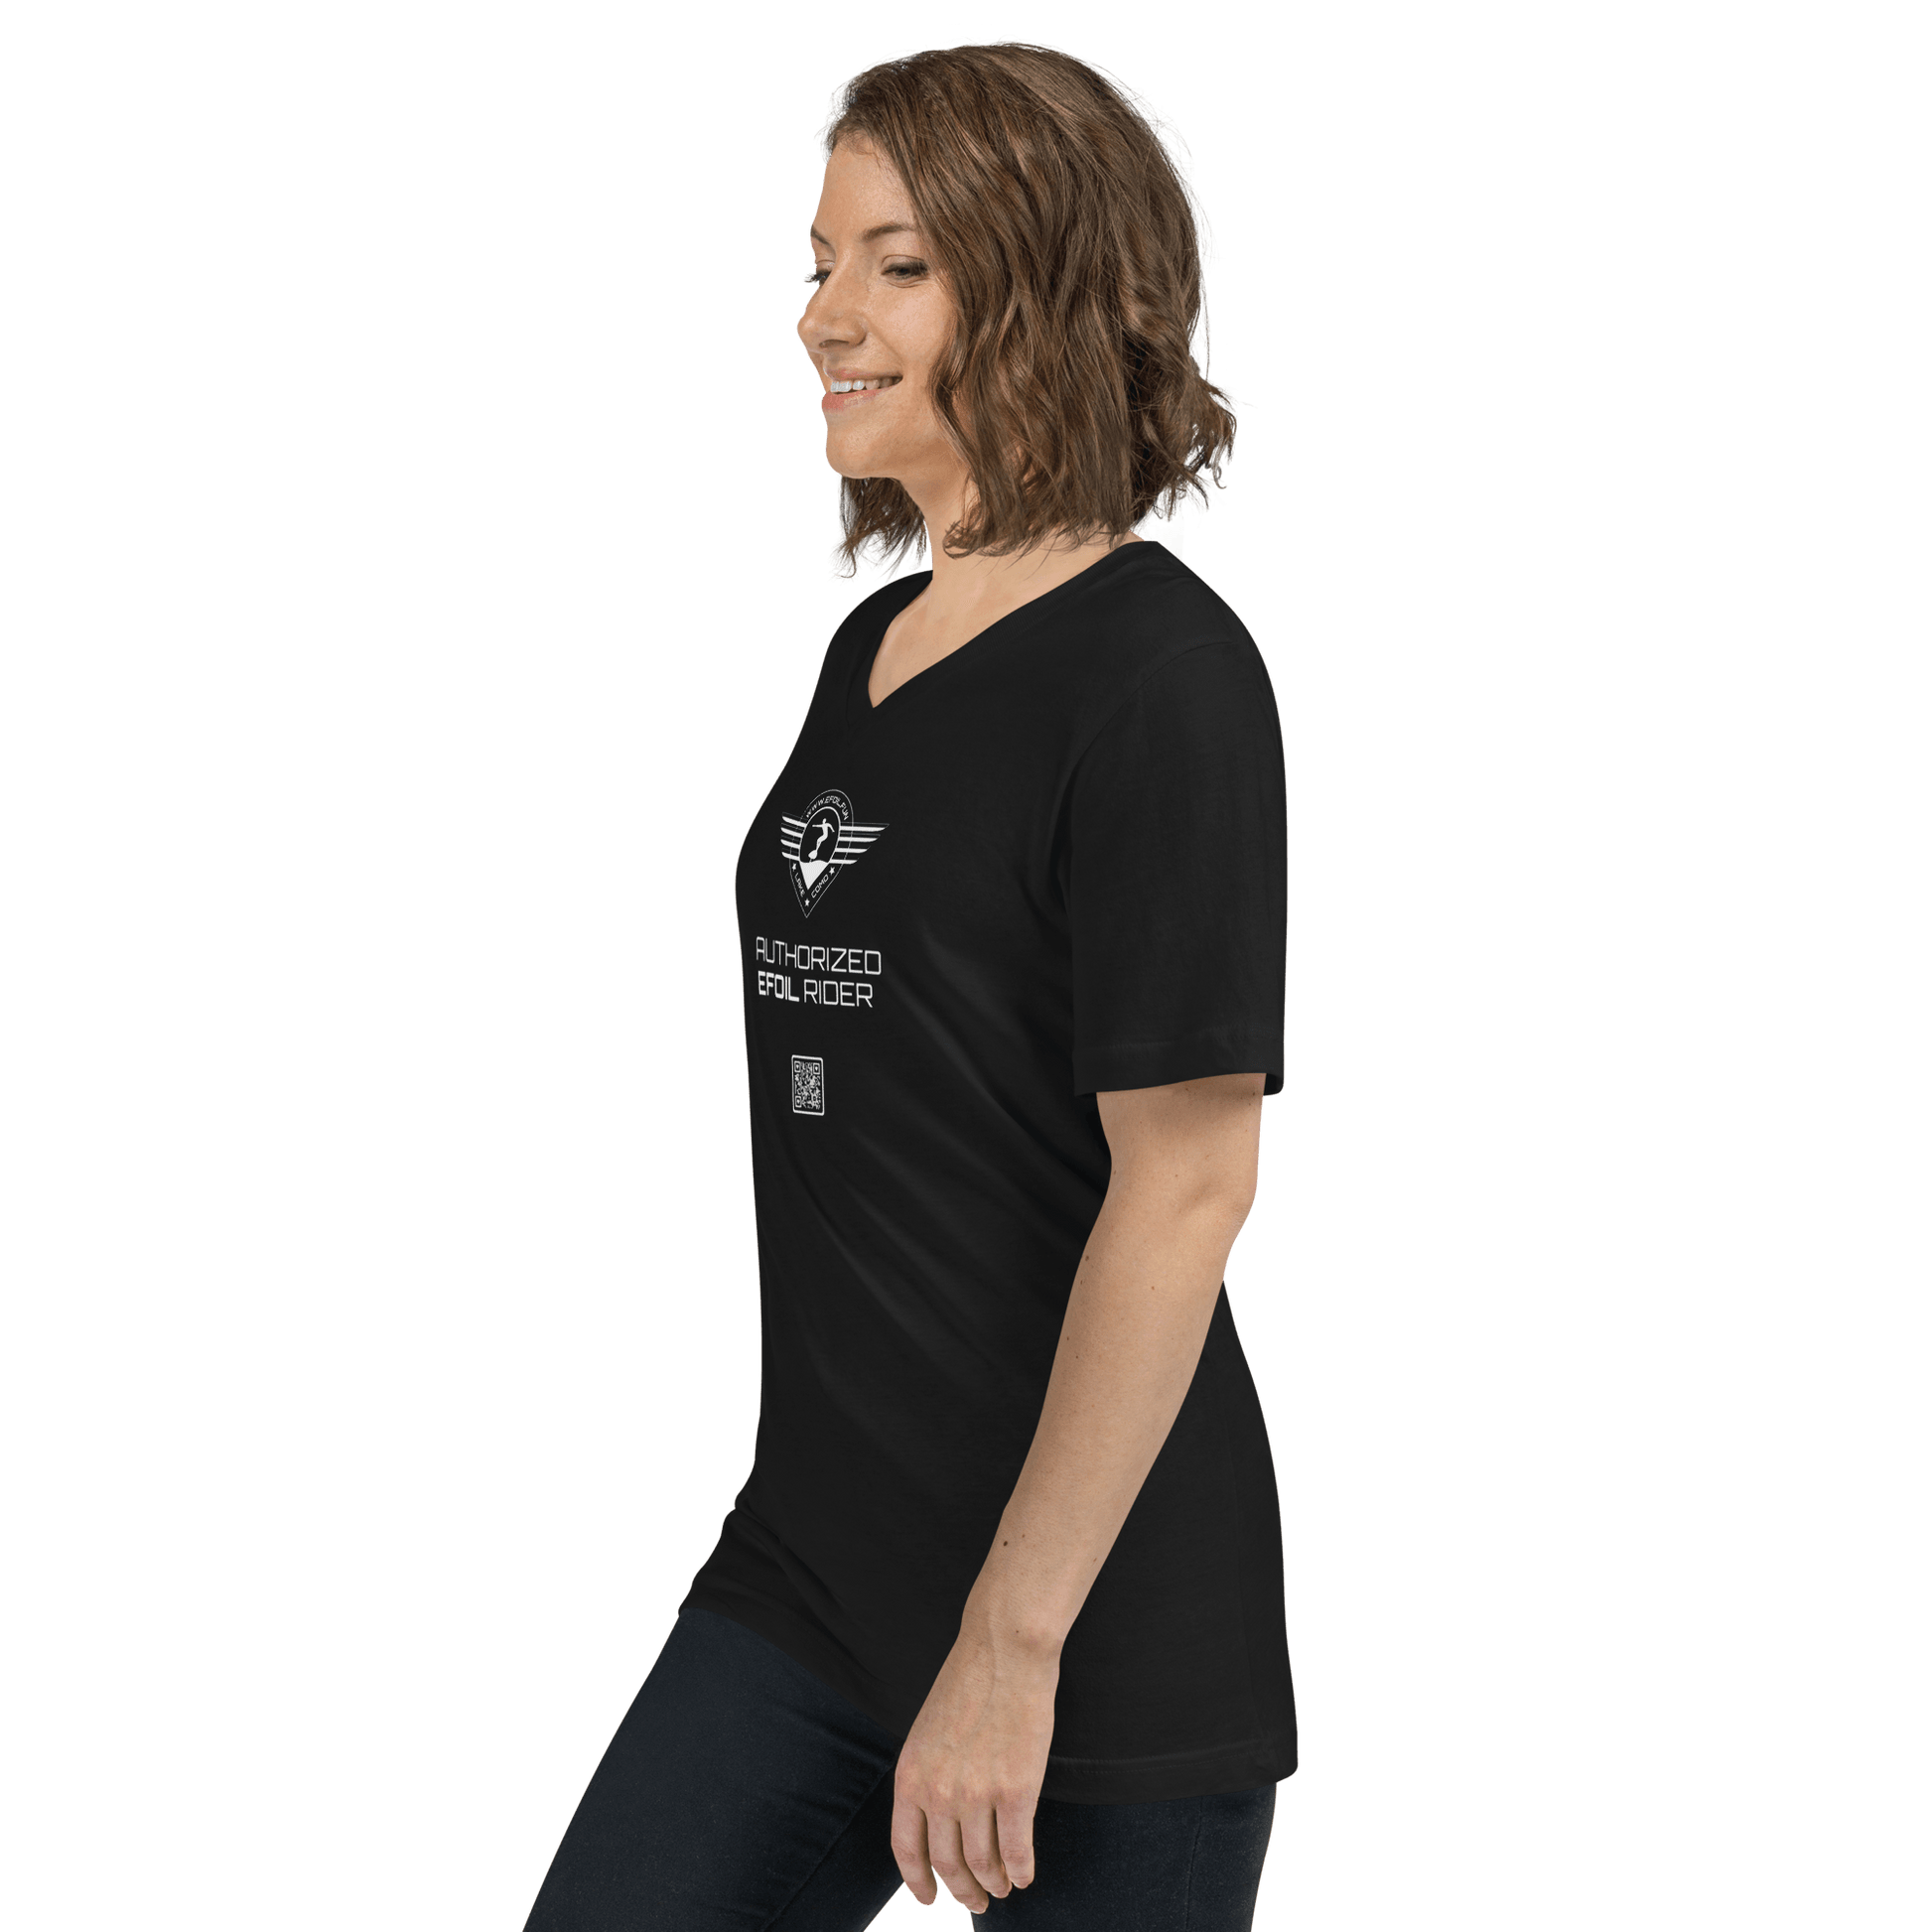 Kurzärmeliges Unisex-T-Shirt mit V-Ausschnitt - shop.efoil.fun